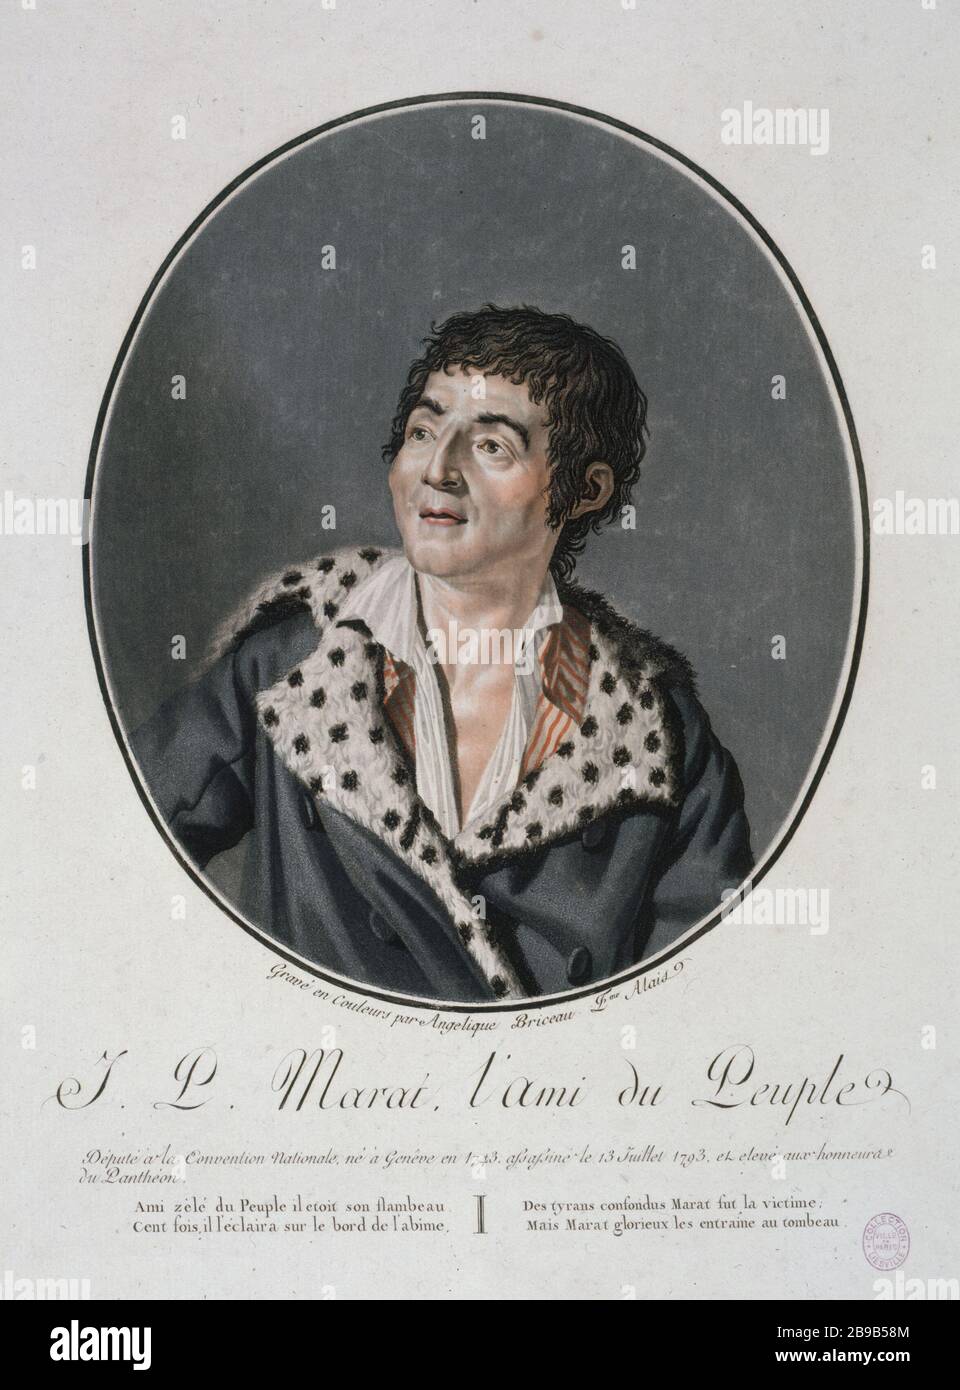 JOHN PAUL MARAT, THE FRIEND OF THE PEOPLE Angélique Briceau (XVIIIème siècle). Jean-Paul Marat (1743-1793), l'ami du peuple. Lithographie couleur. Paris, musée Carnavalet. Stock Photo